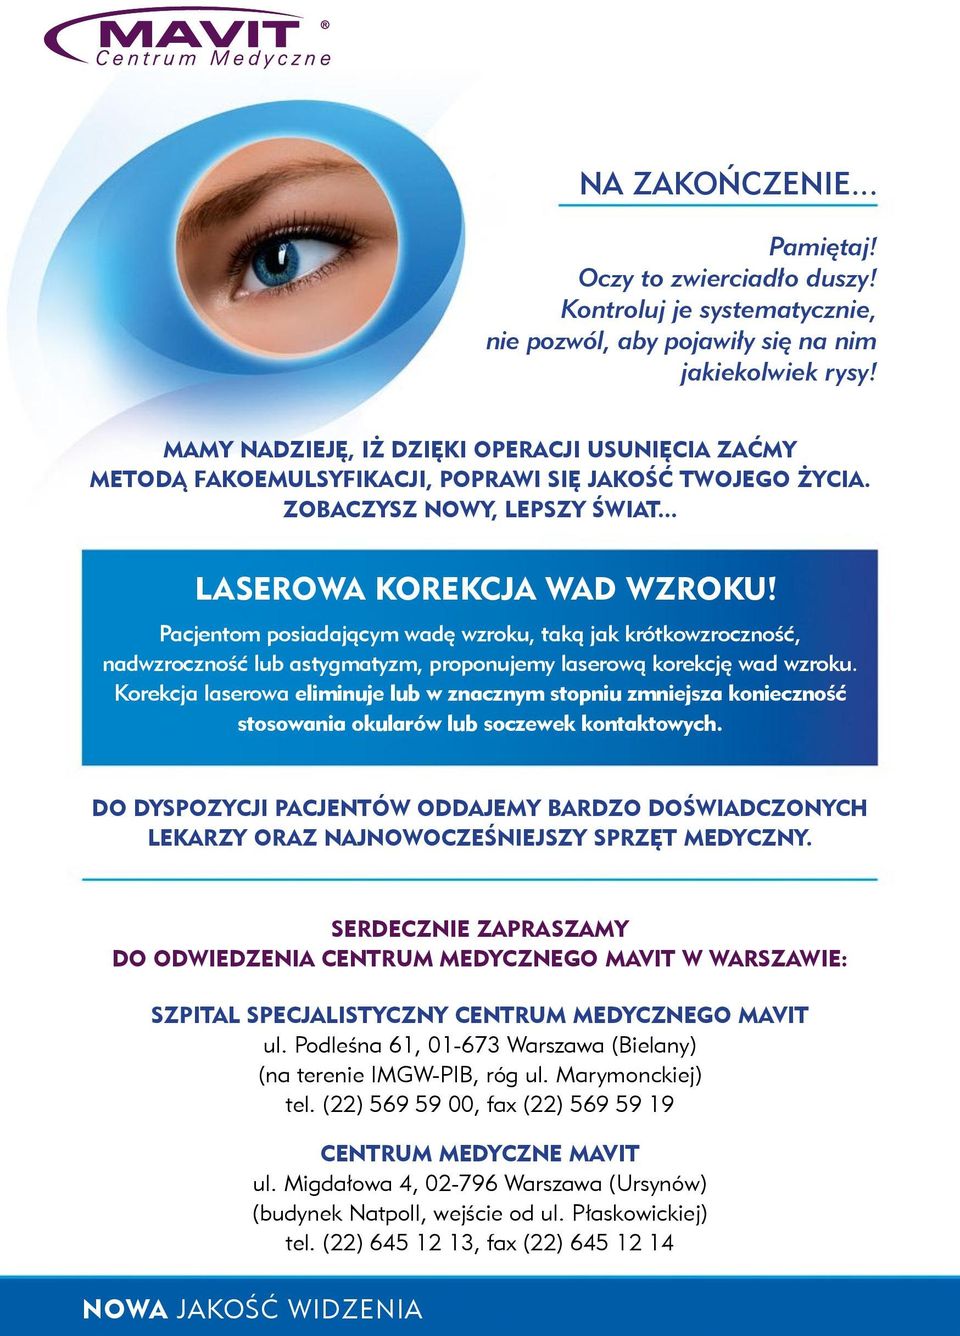 Pacjentom posiadającym wadę wzroku, taką jak krótkowzroczność, nadwzroczność lub astygmatyzm, proponujemy laserową korekcję wad wzroku.